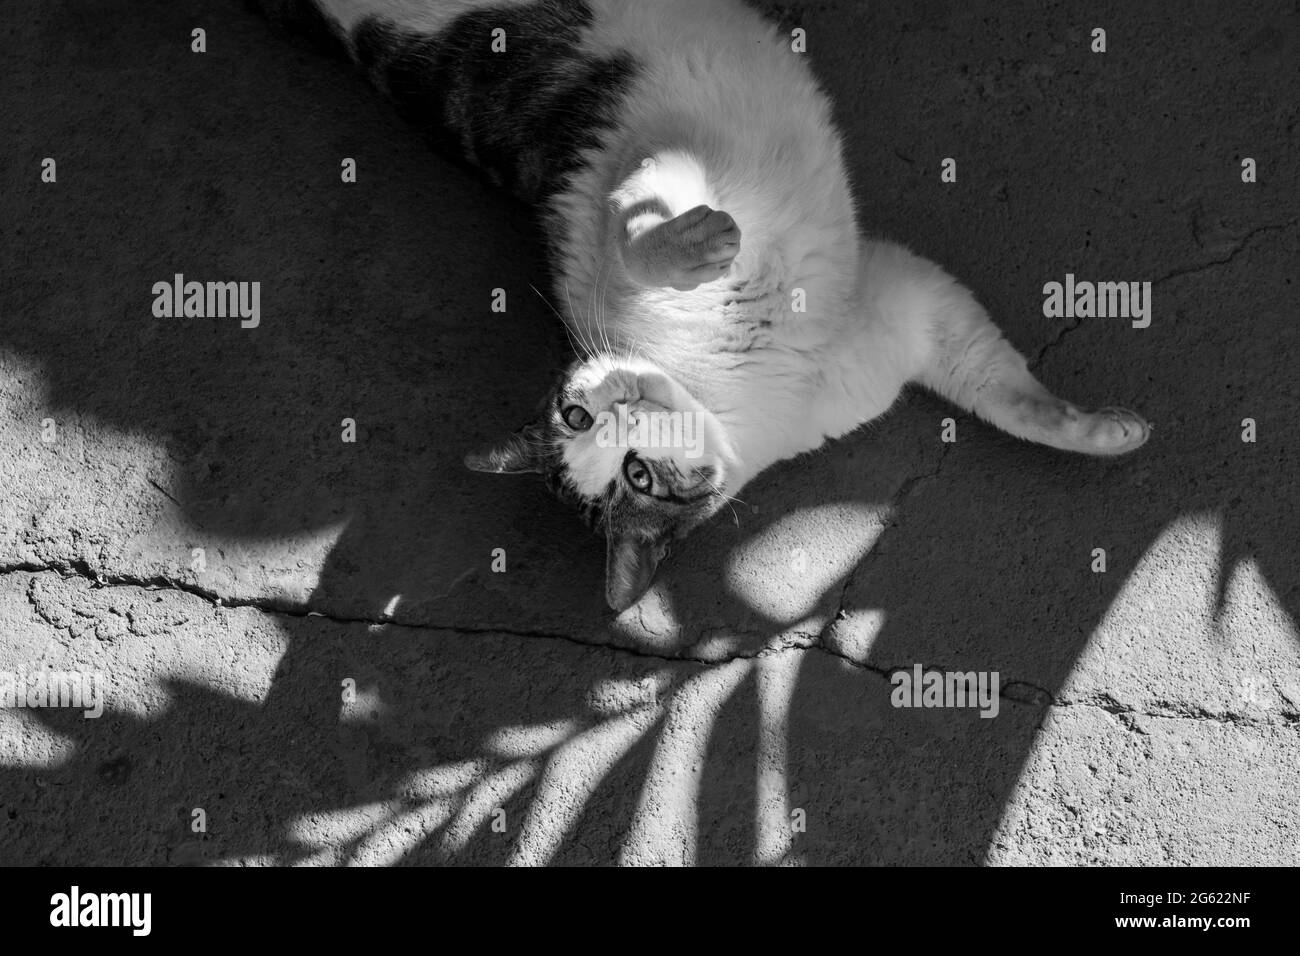 Un gatto tabby, sdraiato all'ombra di un albero di cocco foglie. Immagine in bianco e nero. Foto Stock